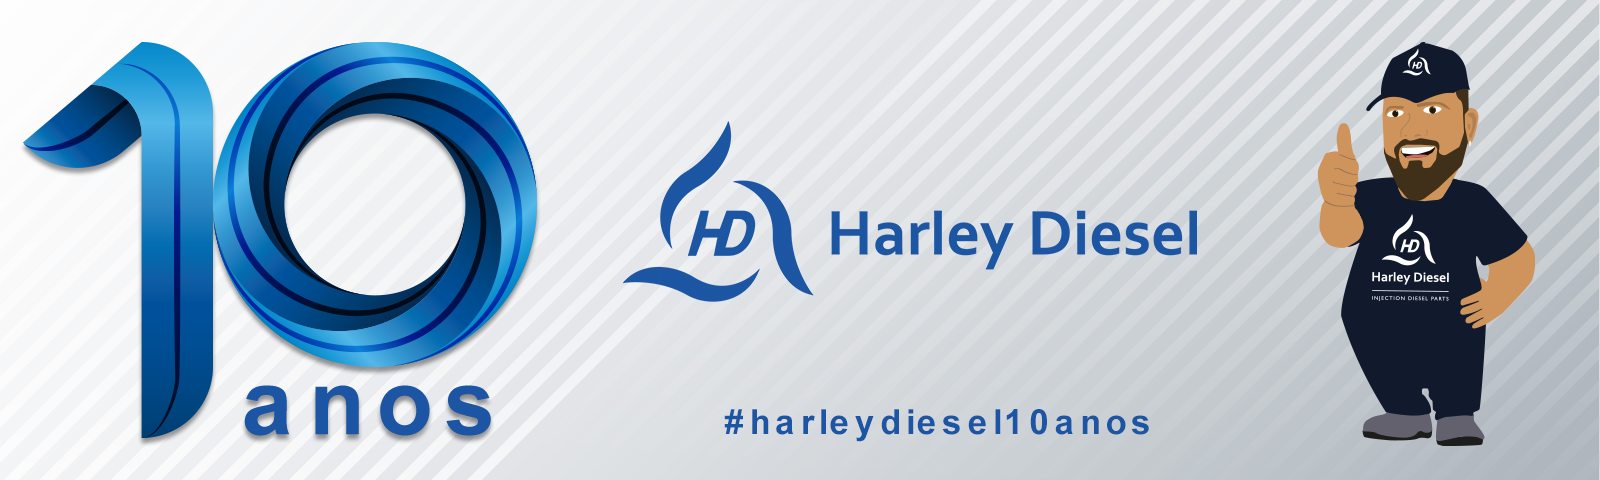 Harley Diesel 10 anos